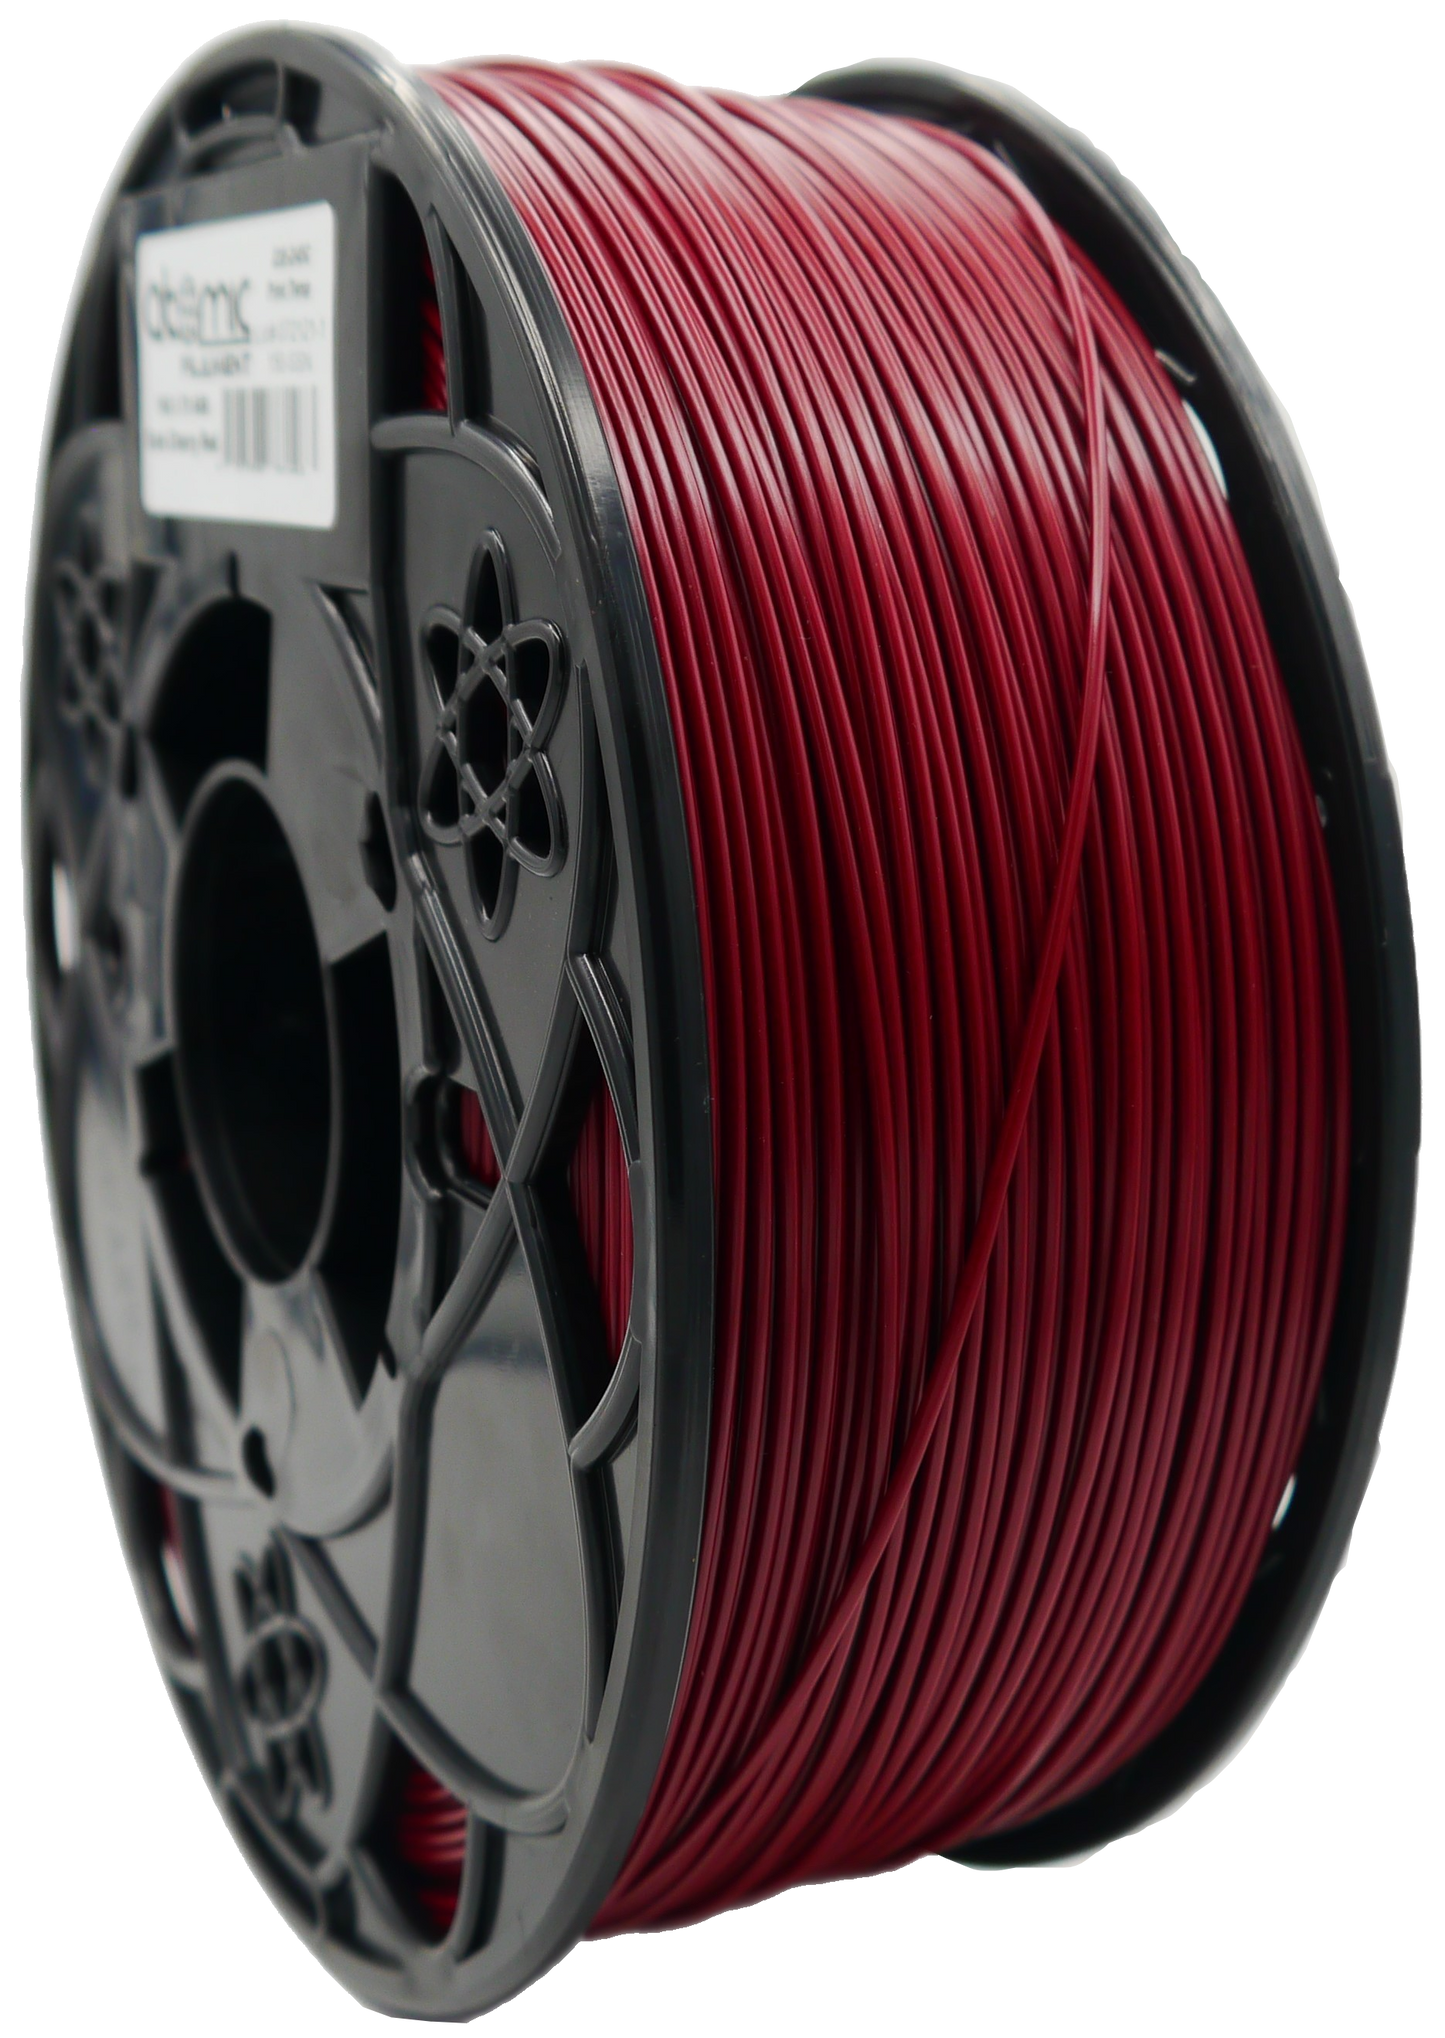 3.5KG Dark Cherry Red ABS Filament